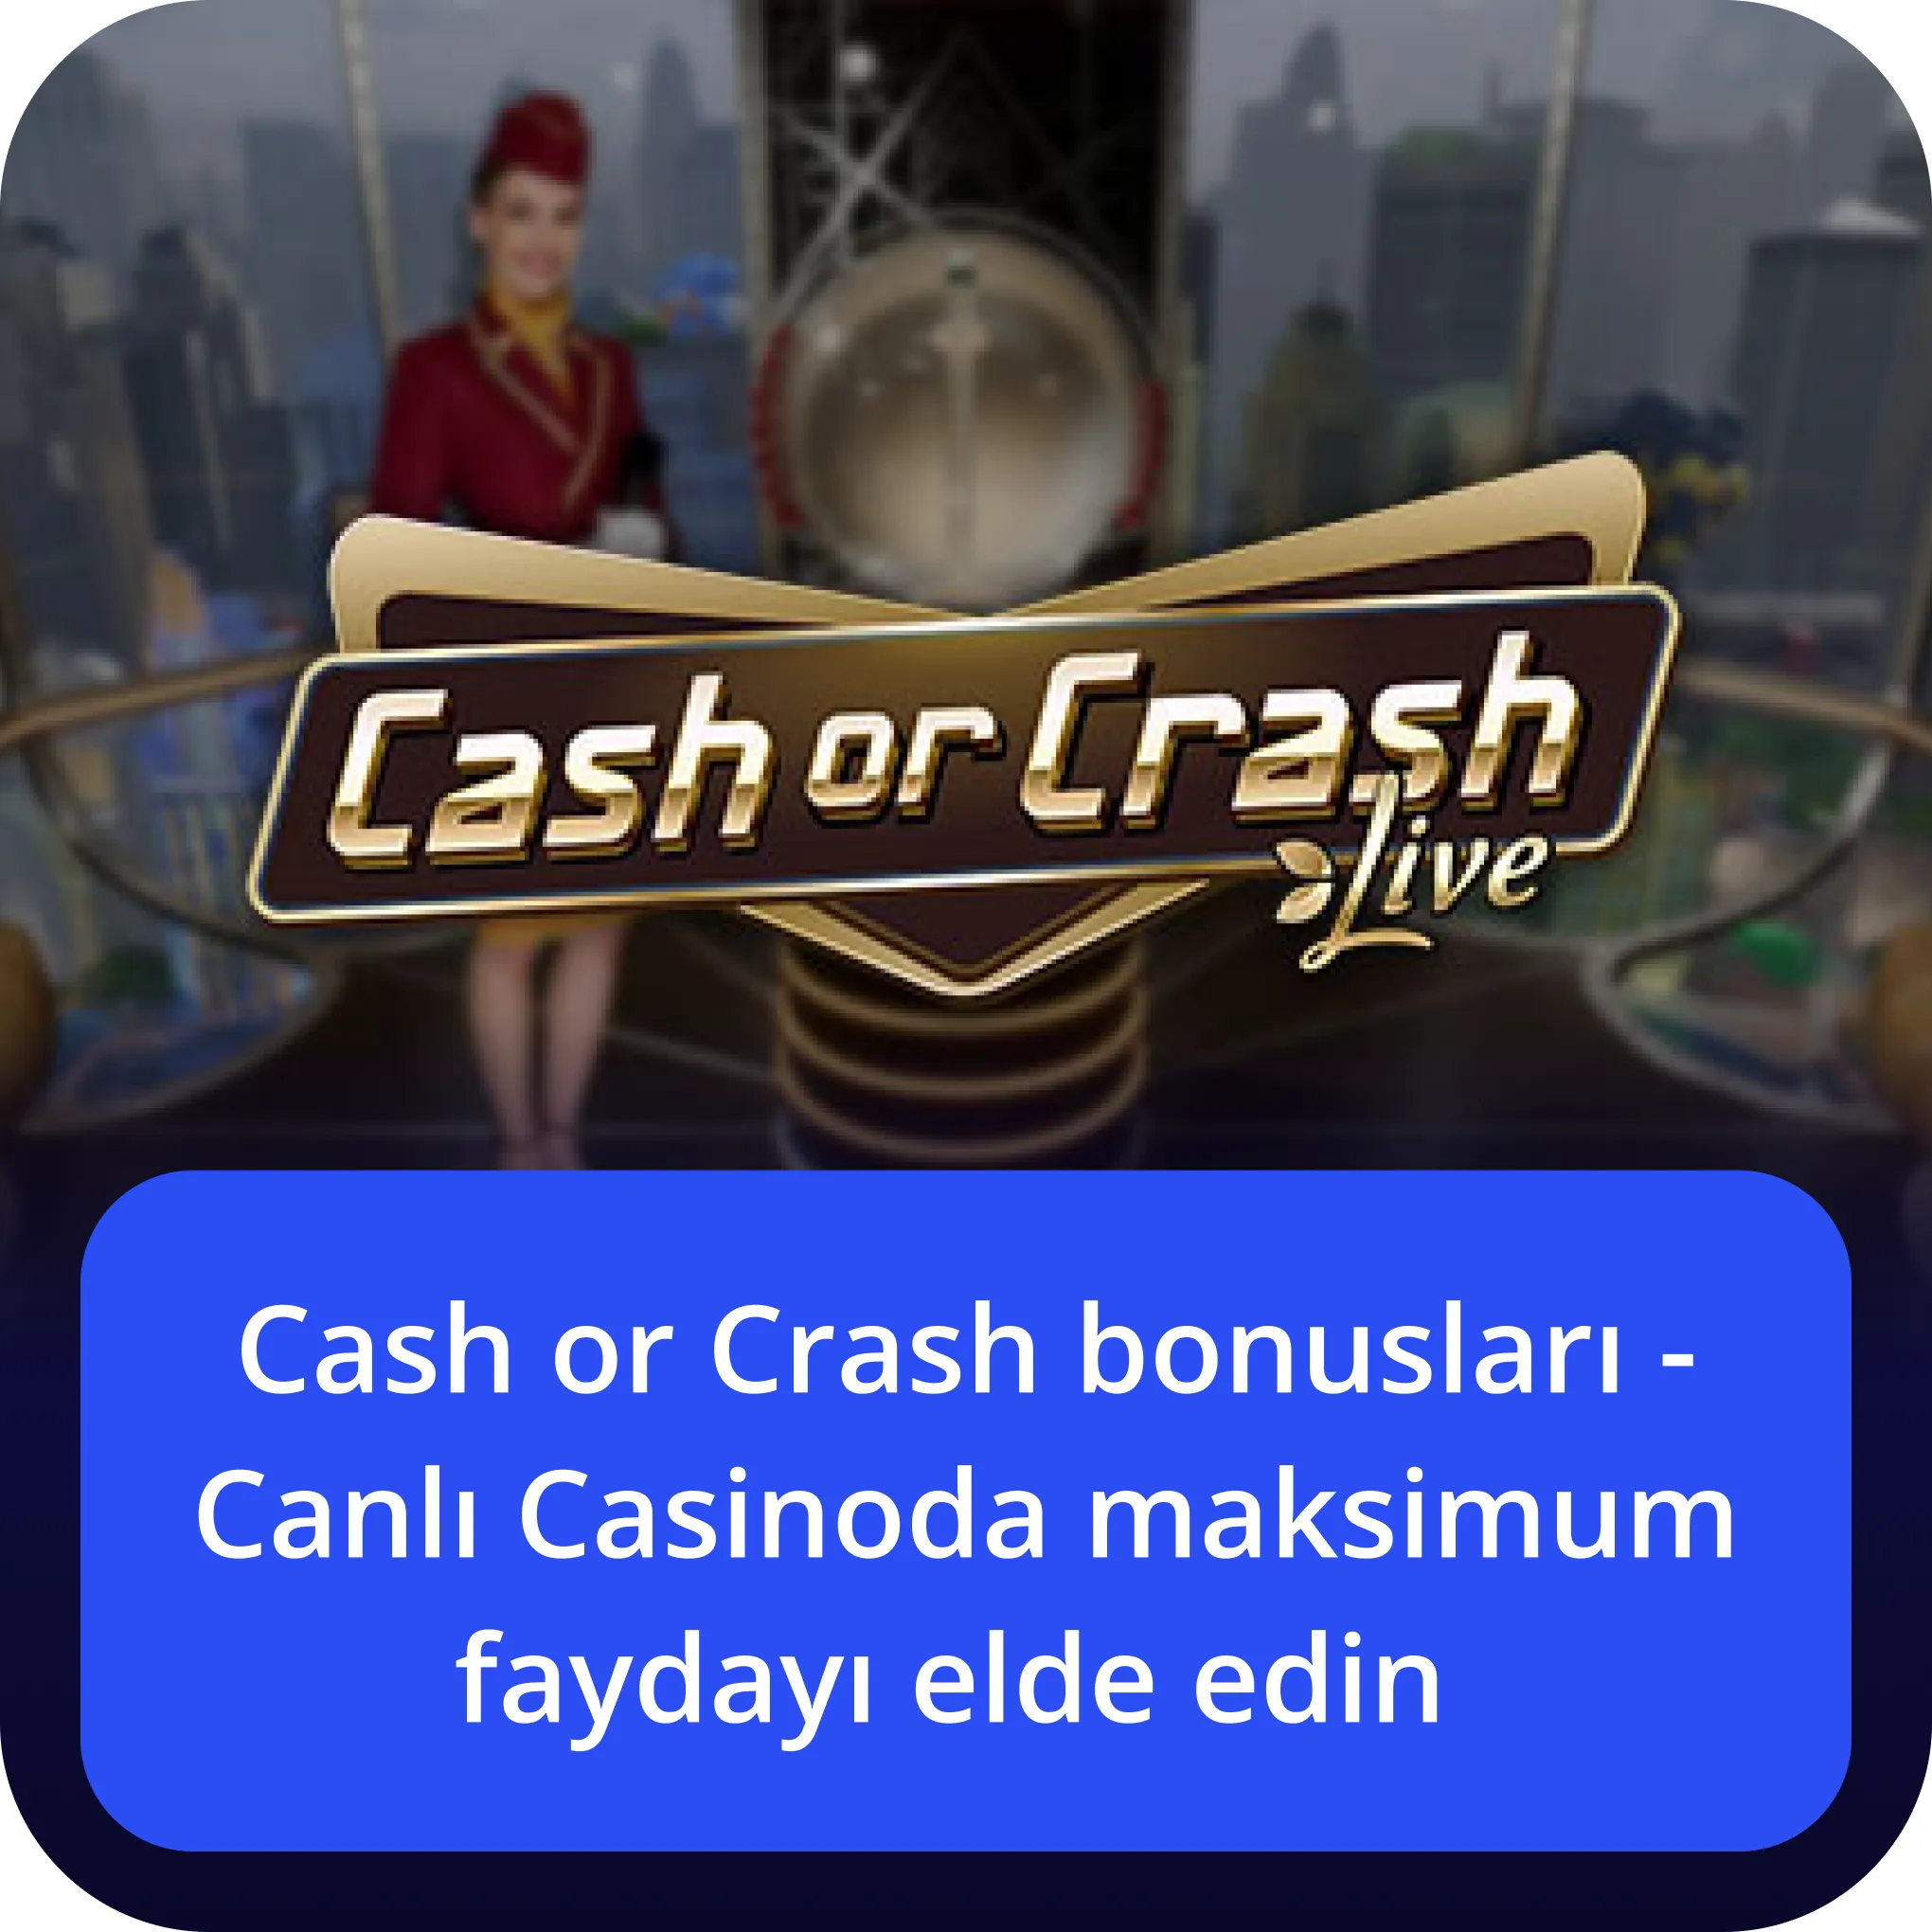 Cash or Crash bonusları